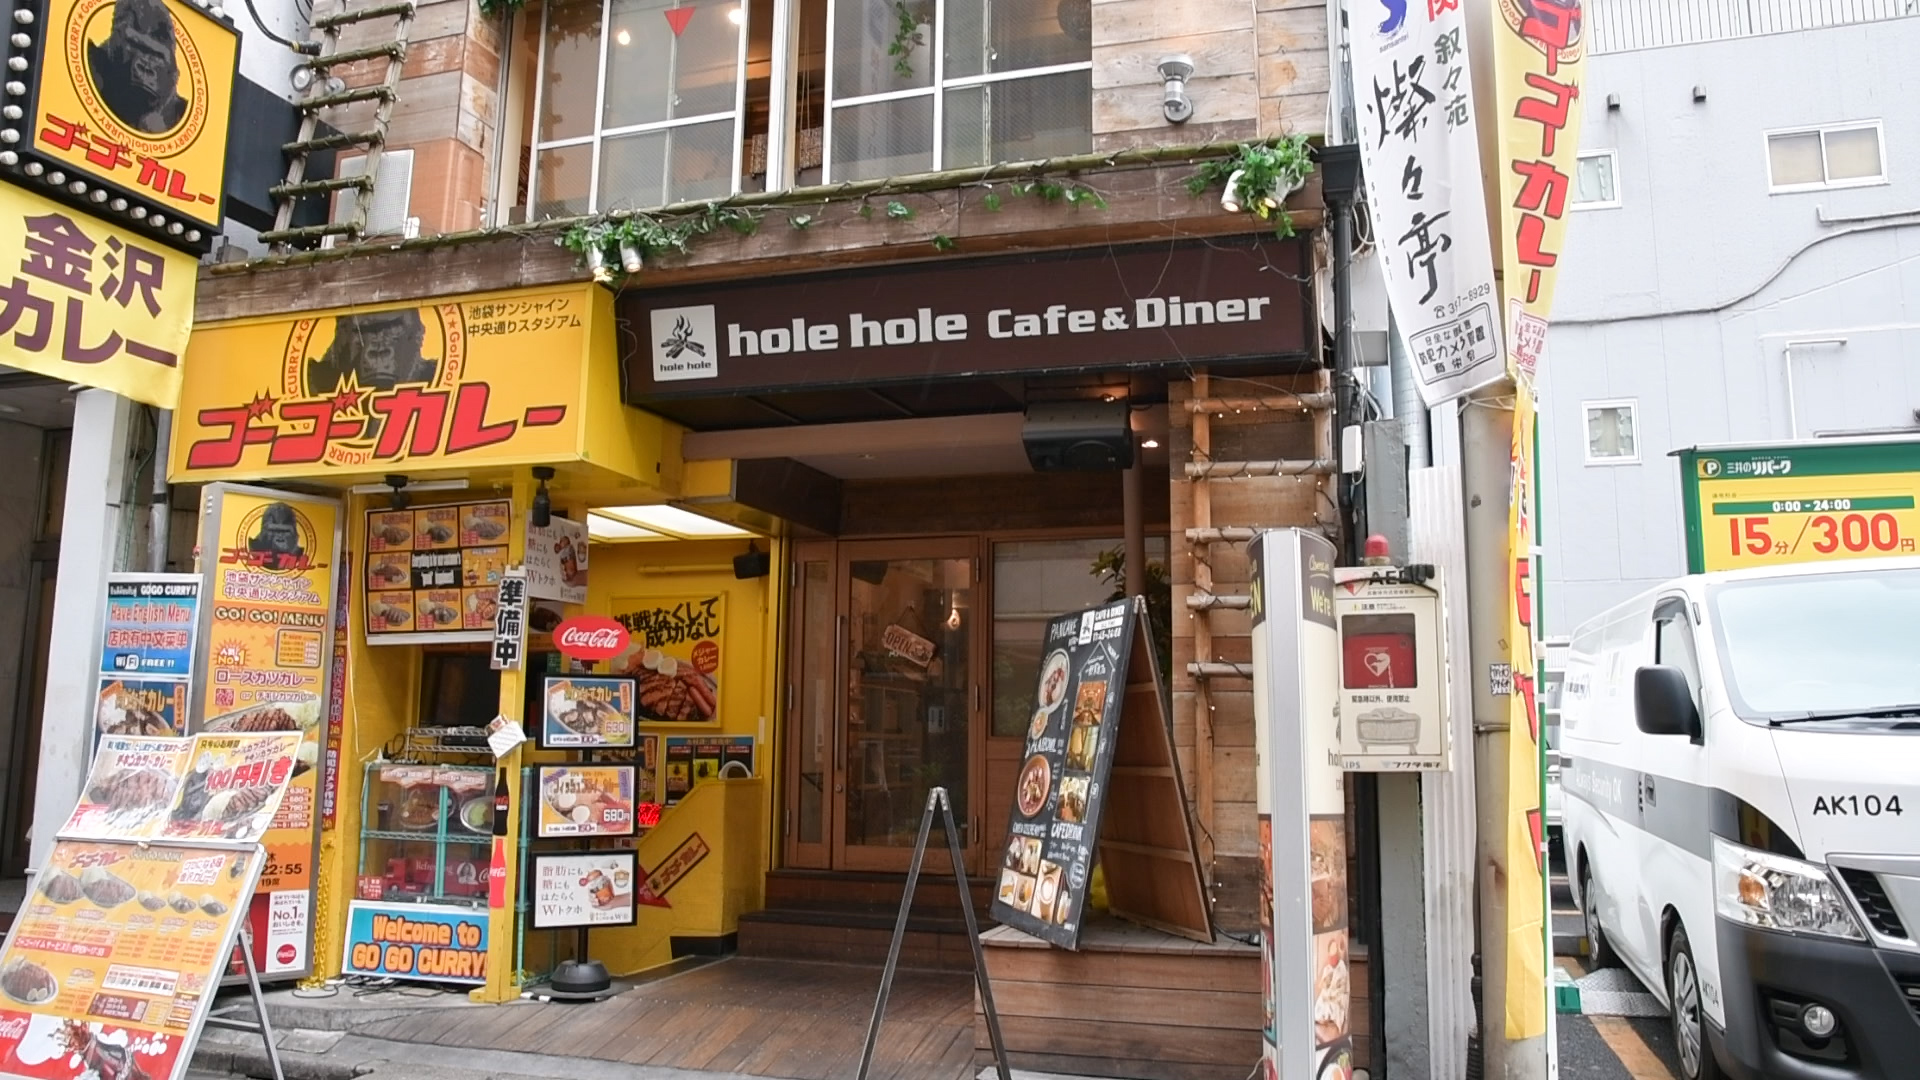 パンケーキ クッキー Hole Hole Cafe Diner の新感覚ハイブリッドスイーツ 17年5月27日 エキサイトニュース